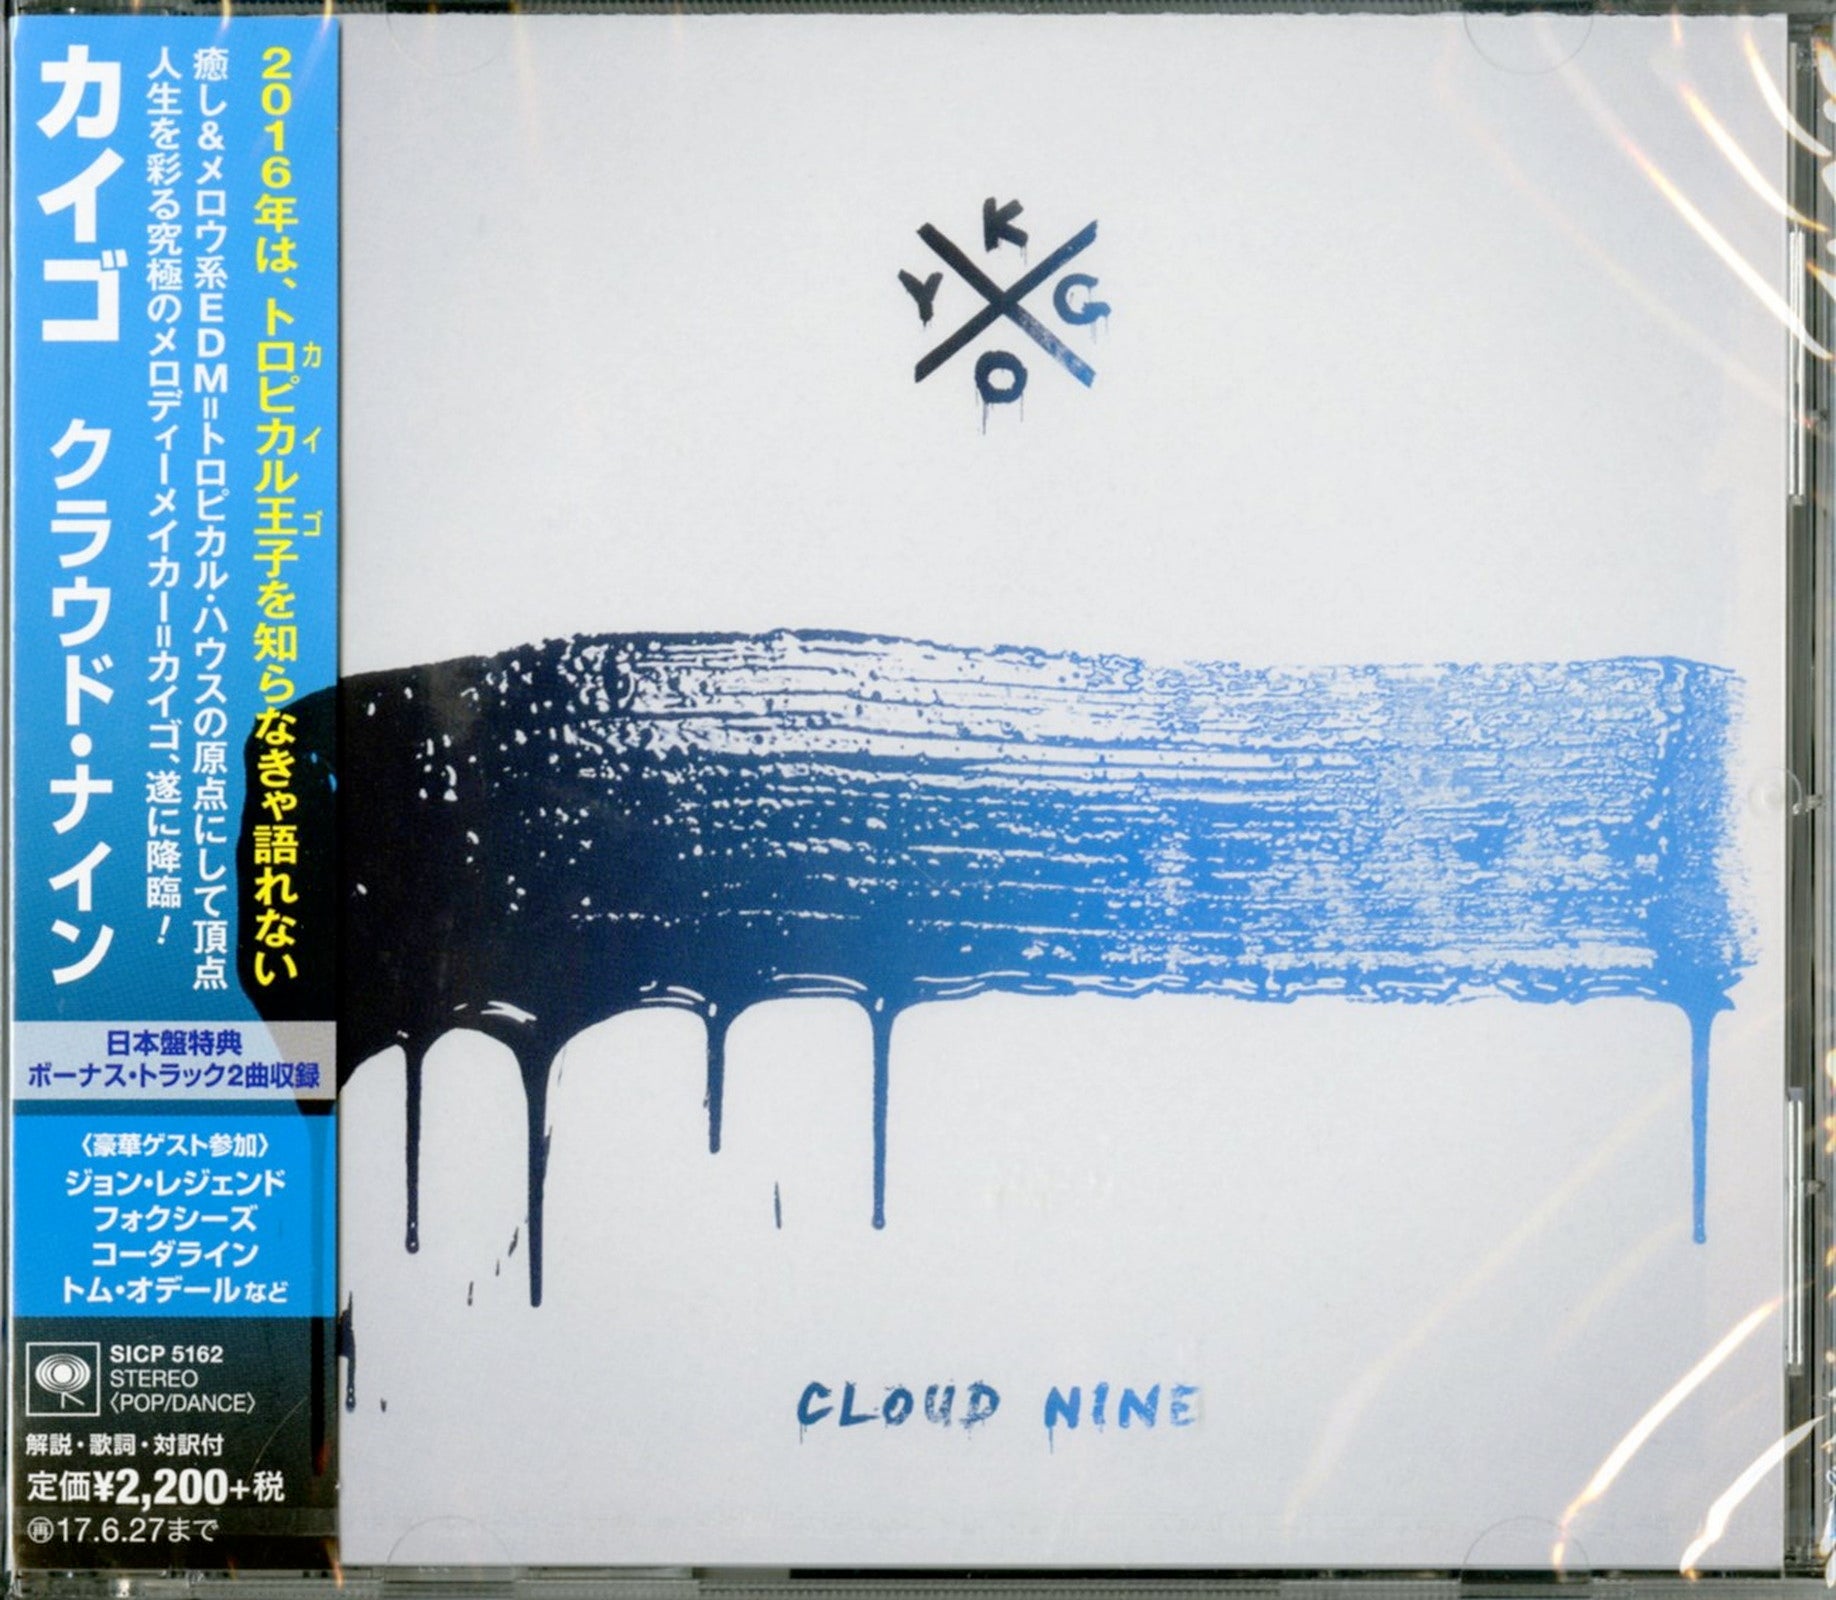  Cloud Nine: CDs & Vinyl